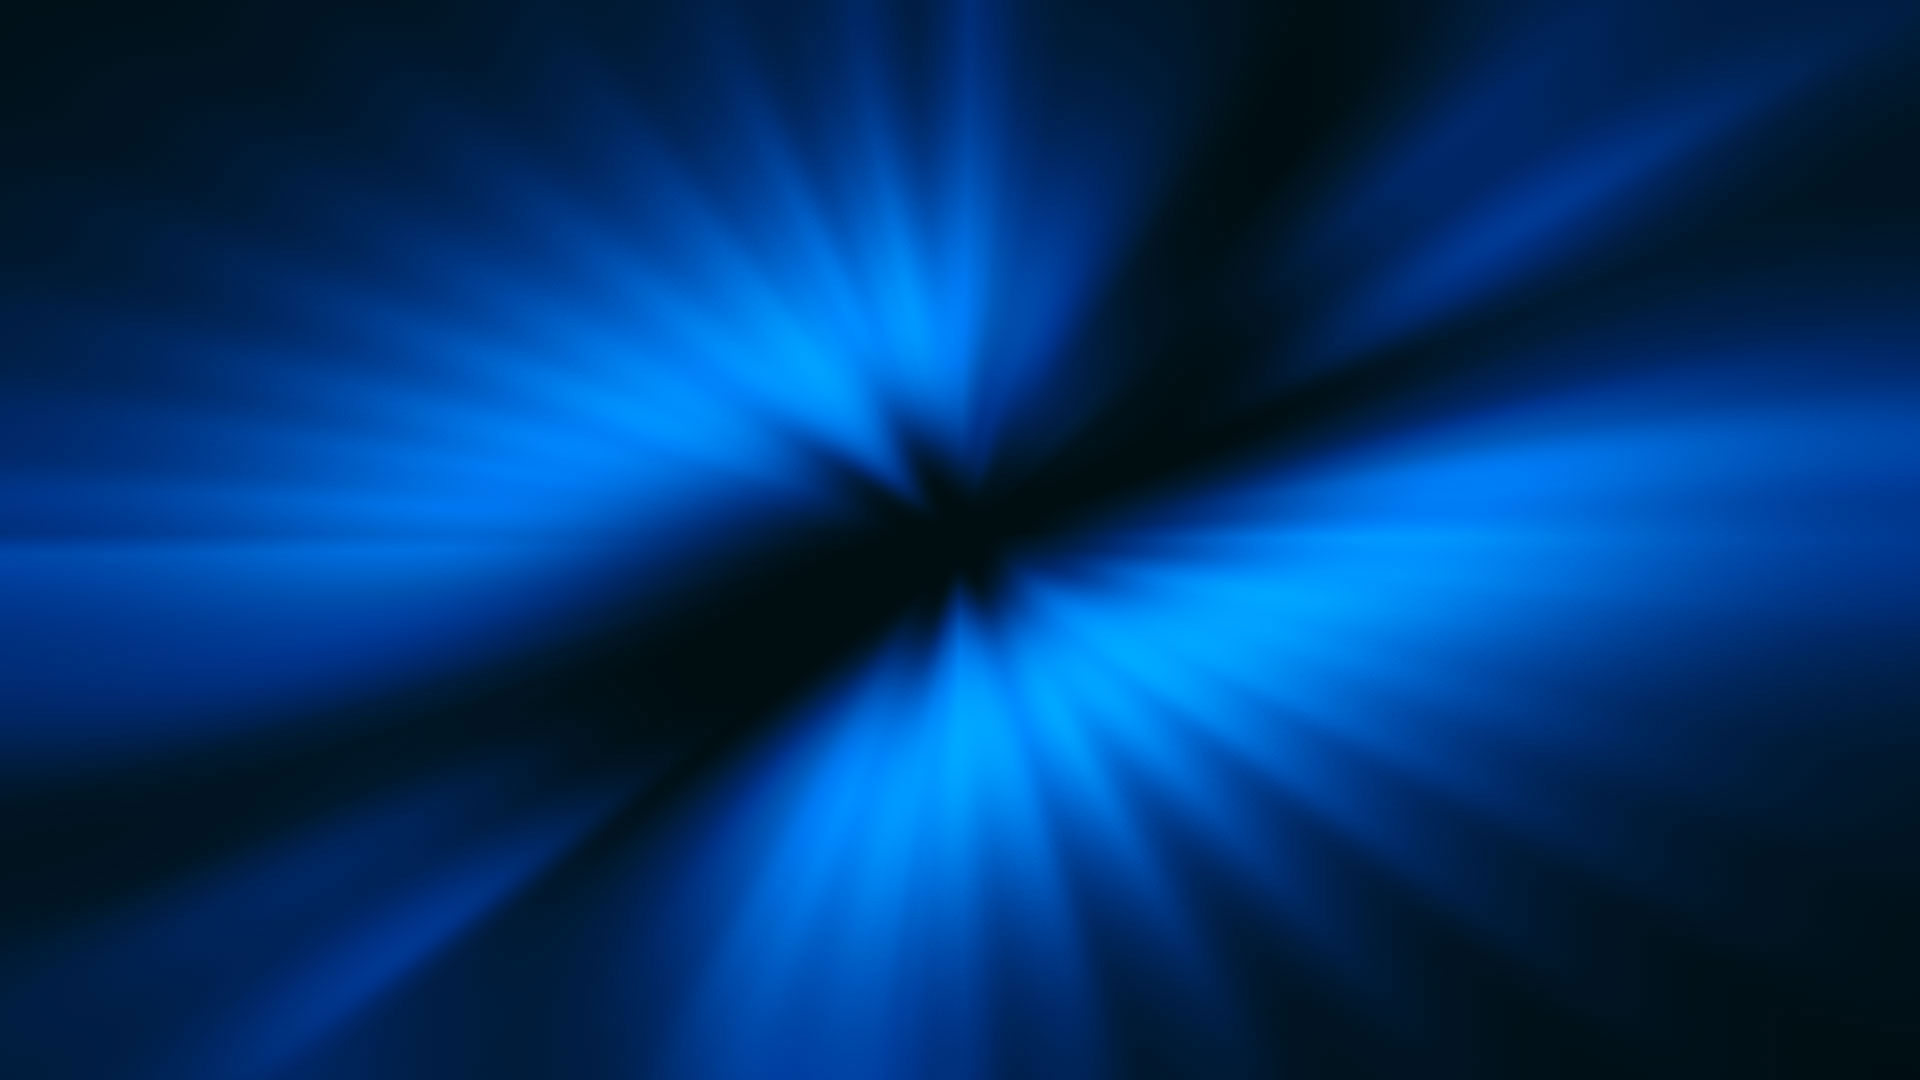 Dark Space Background Blue on Black